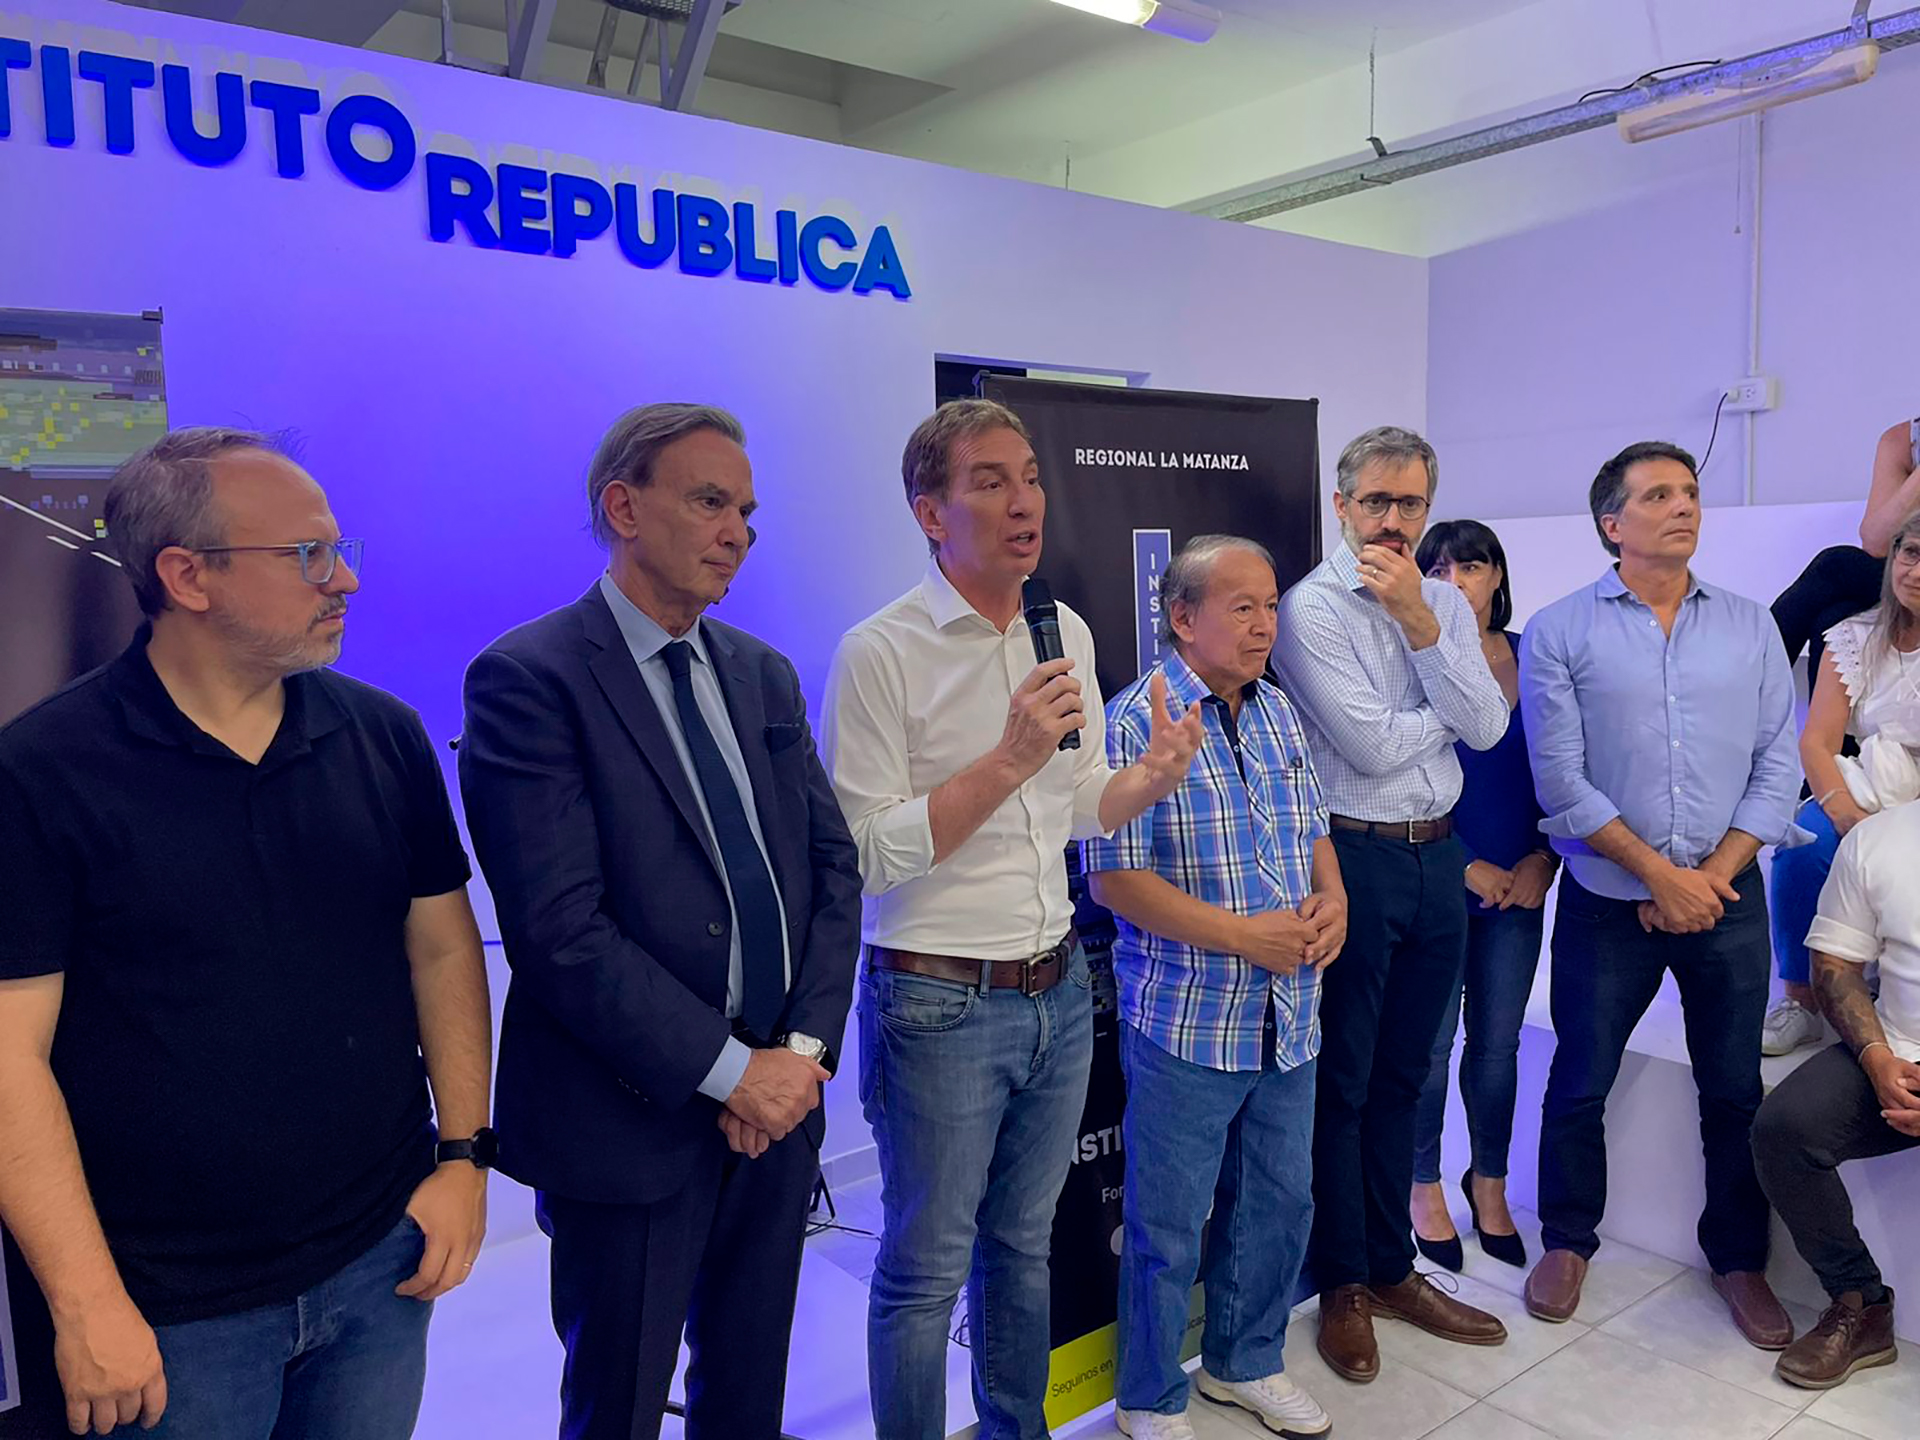 El lanzamiento del Instituto República en La Matanza, encabezado por Diego Santilli, Miguel Ángel Pichetto y Diego Valenzuela